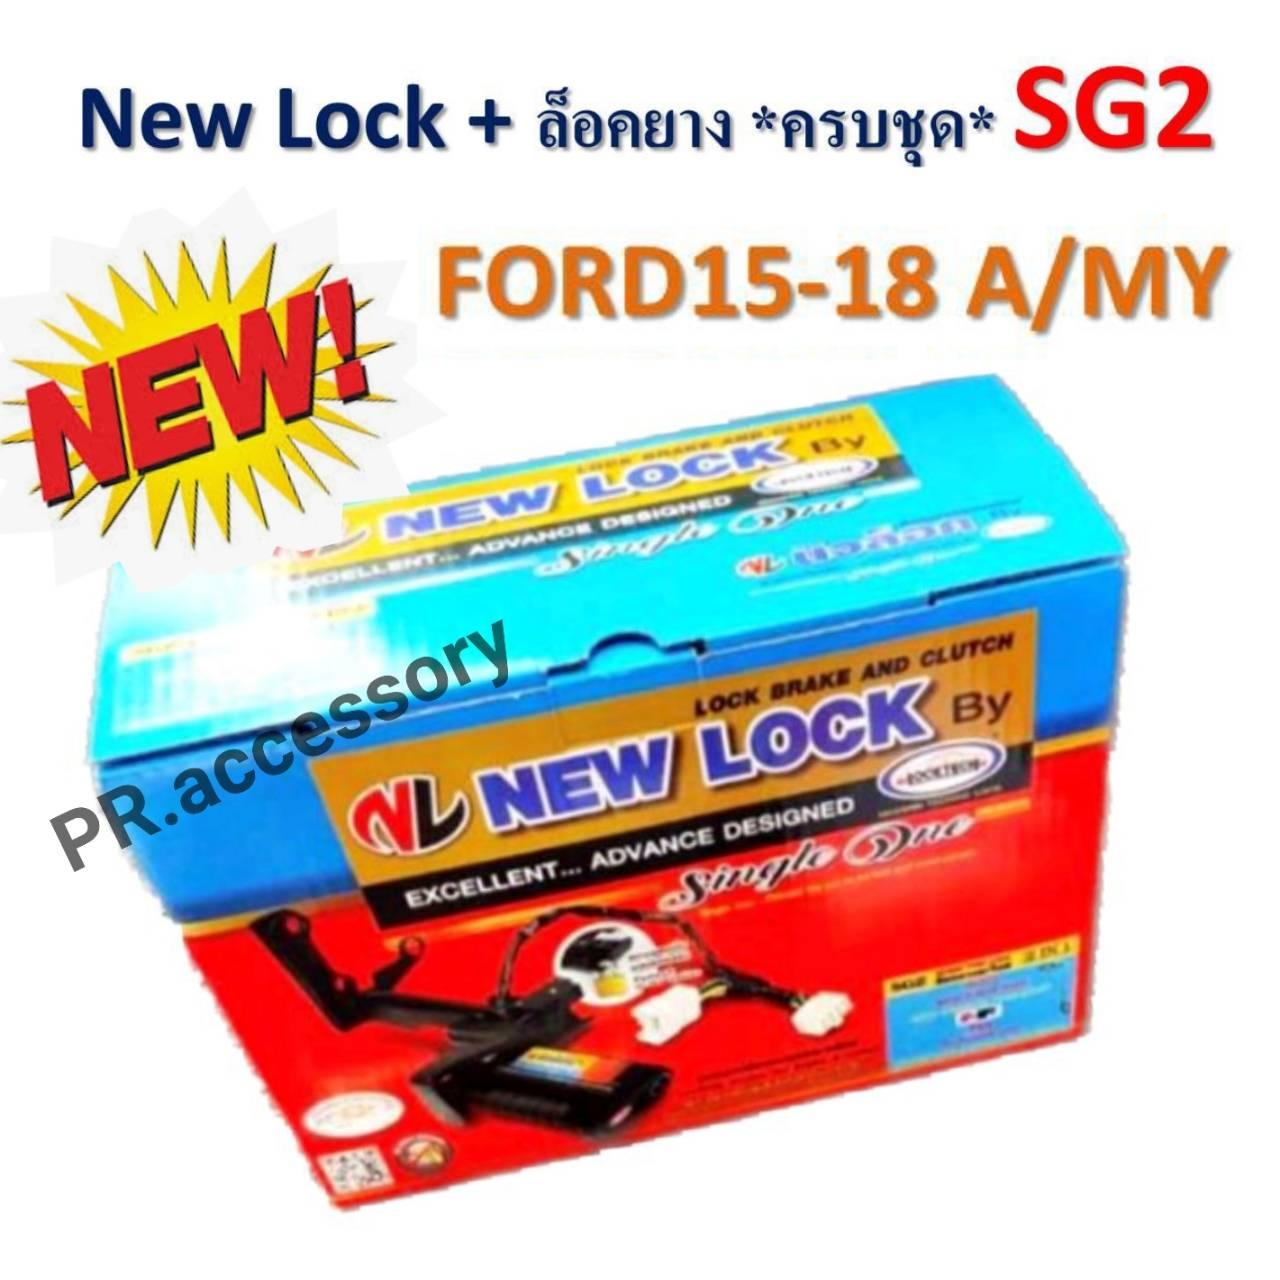 New Lock + ล็อคยางอะไหล่ ระบบกุญแจ ความปลอดภัยสูง SG2 FORD 2015-2018 A/MY